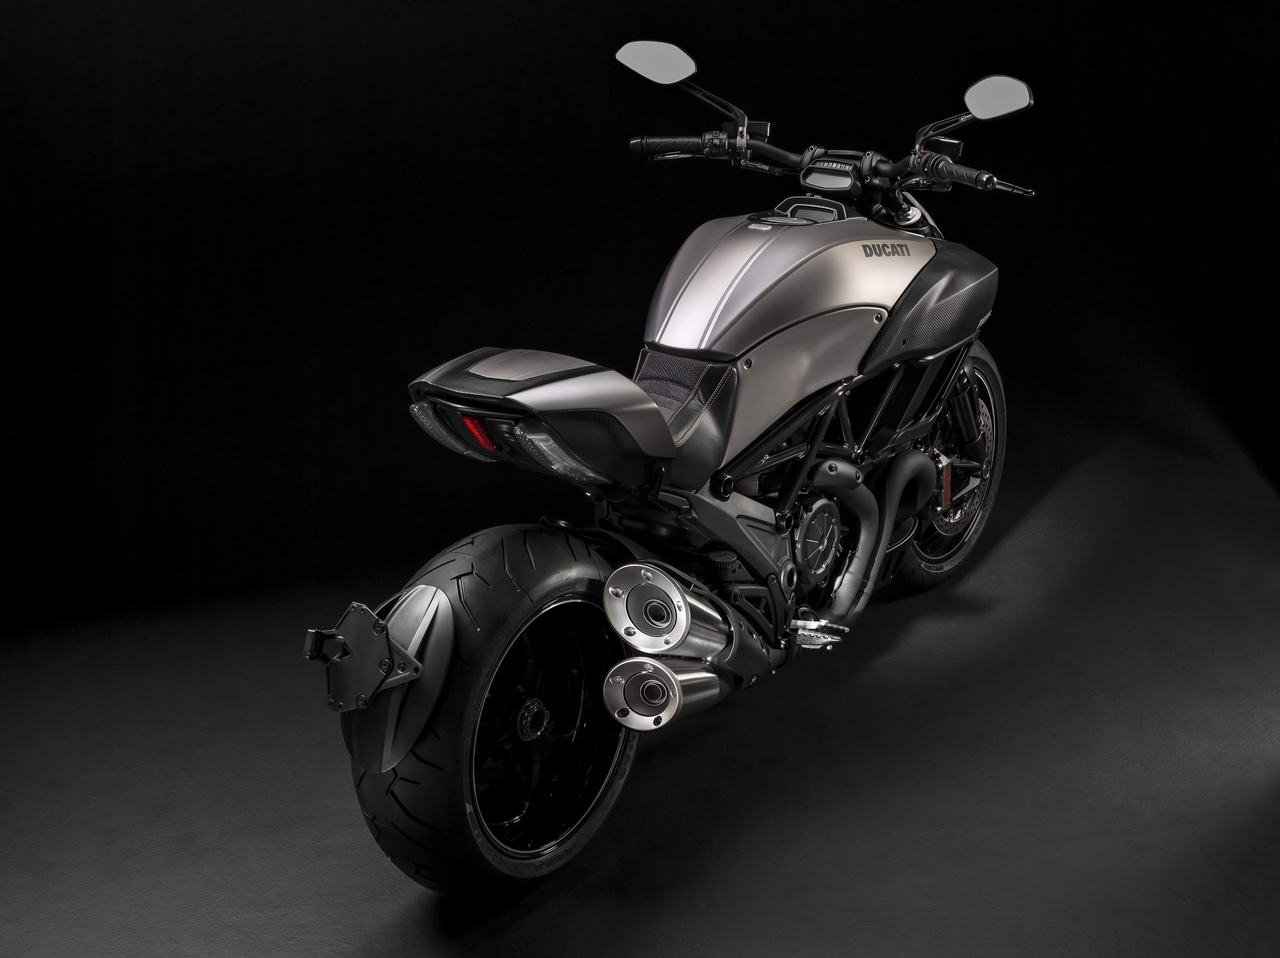 Listino Ducati Diavel Entry Model Naked - image 13249_1 on https://moto.motori.net